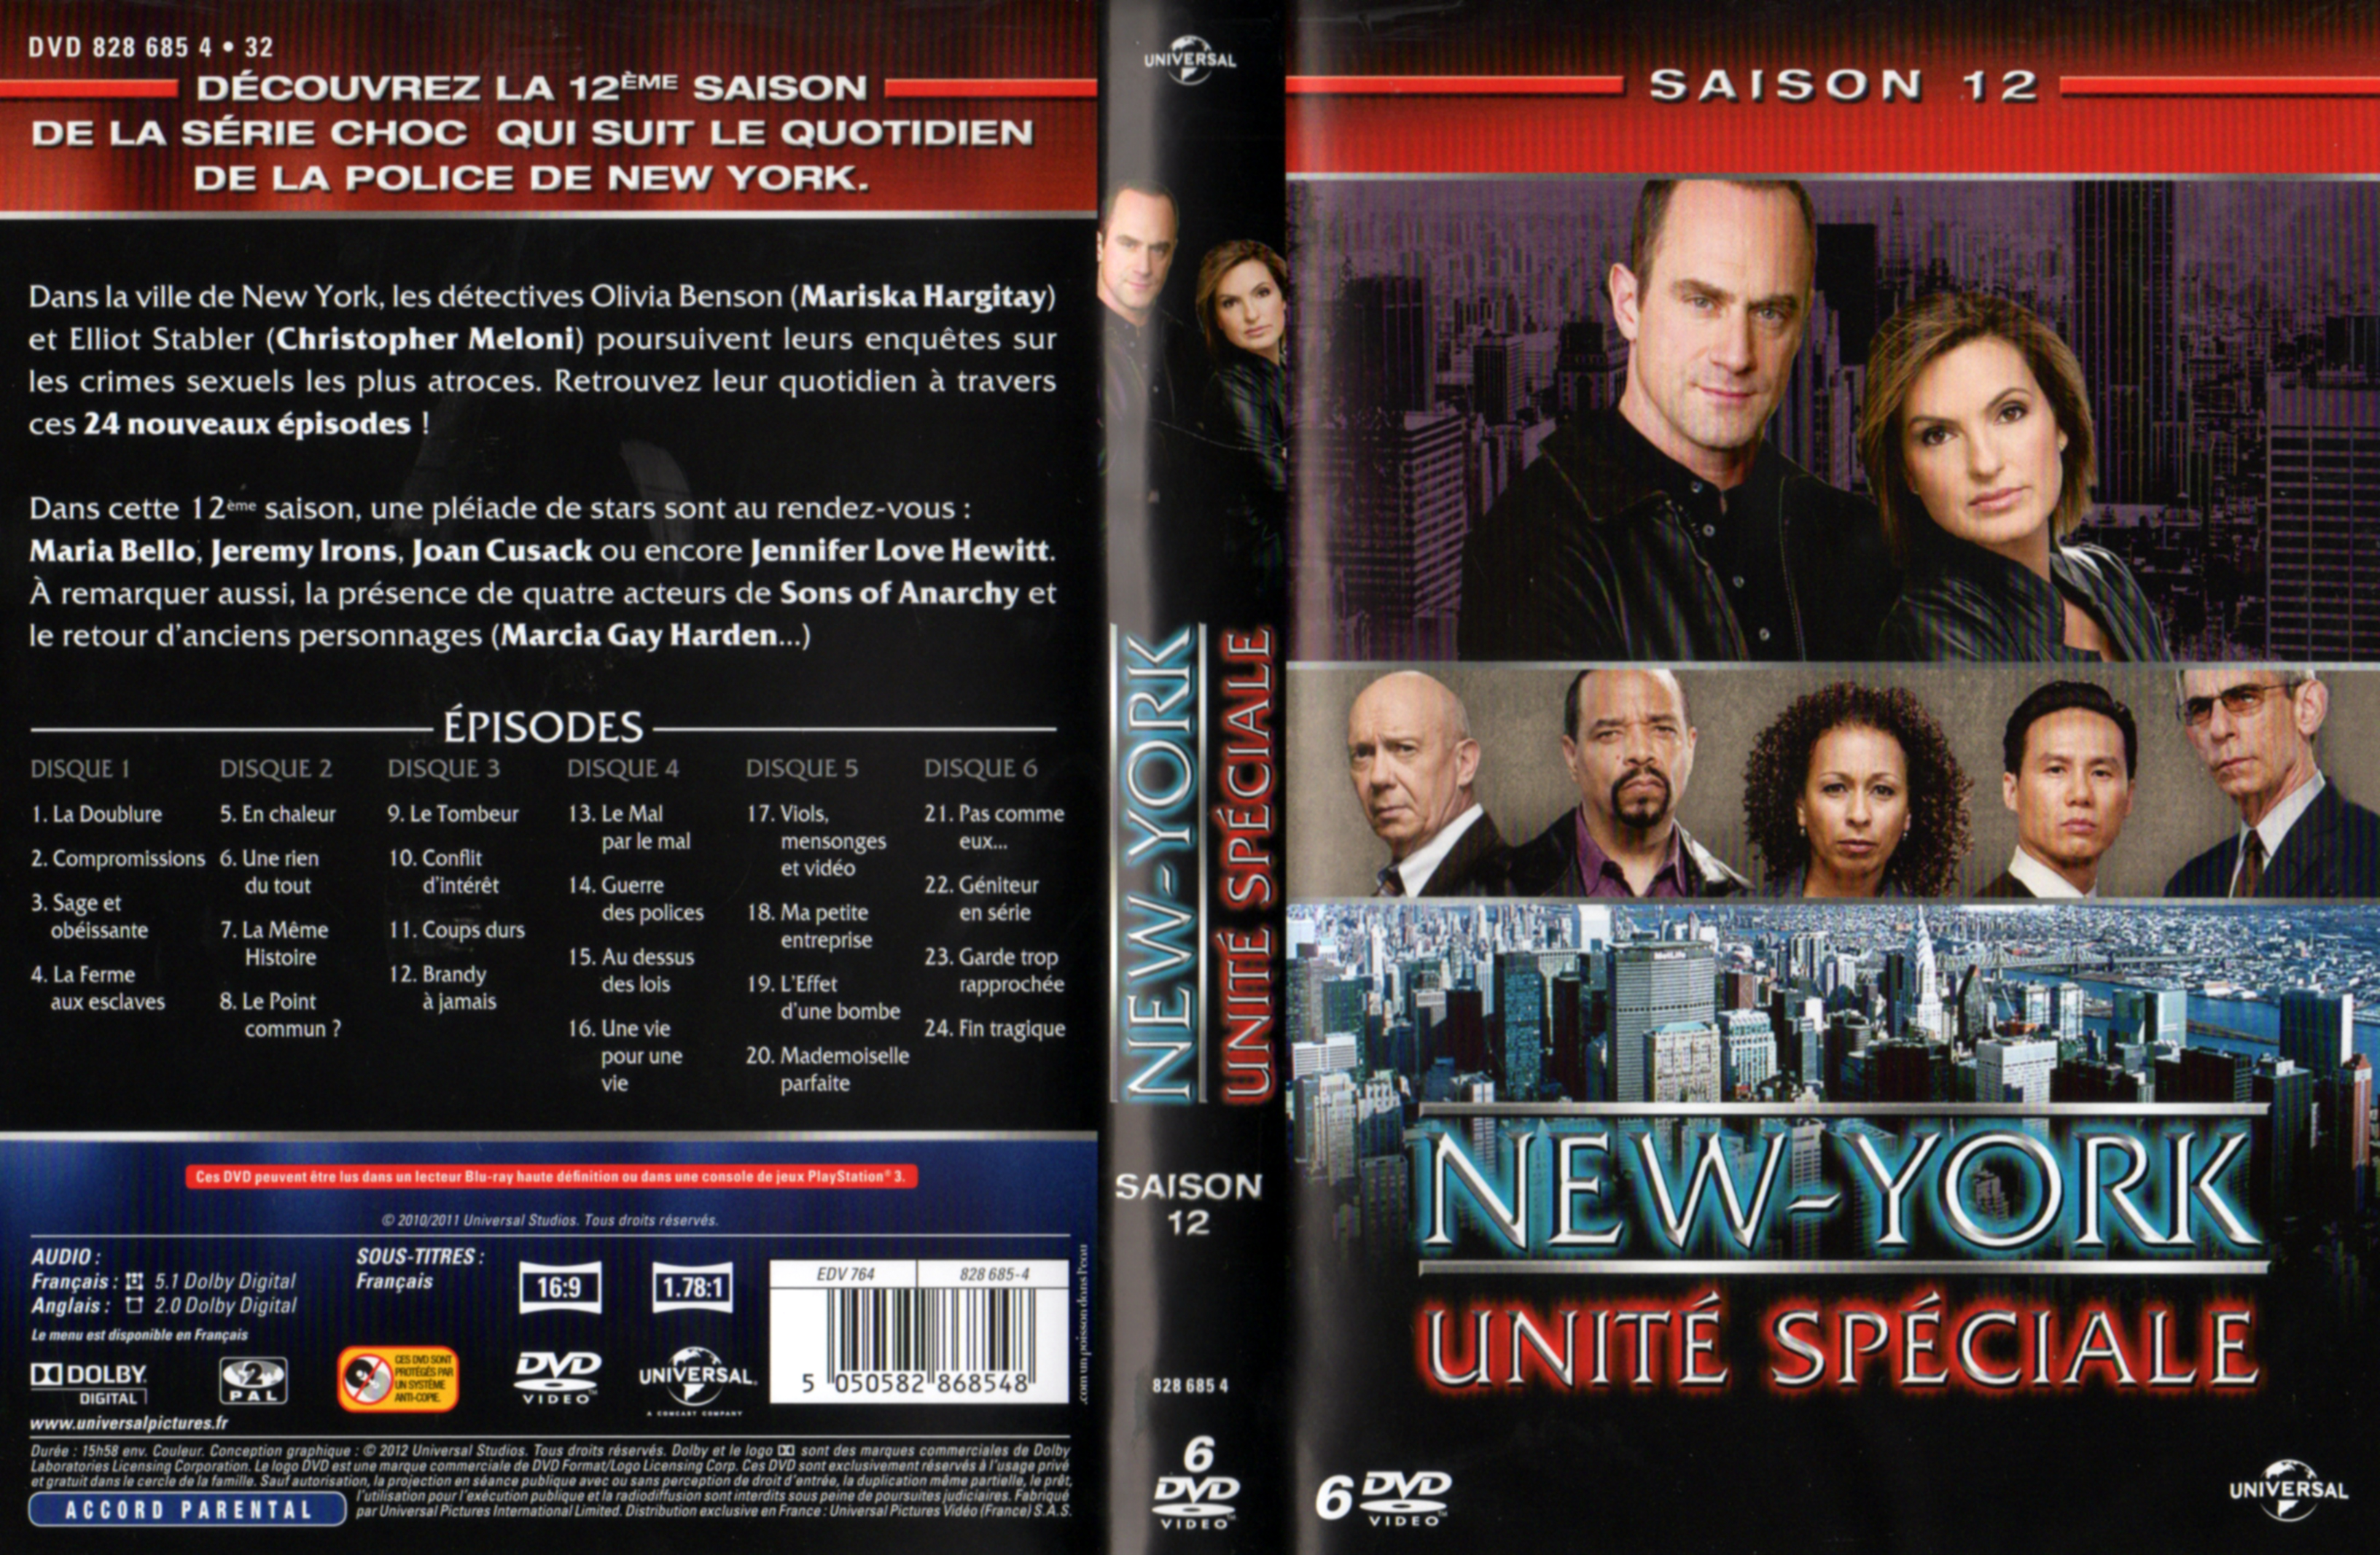 Jaquette DVD New York unit spciale saison 12 COFFRET